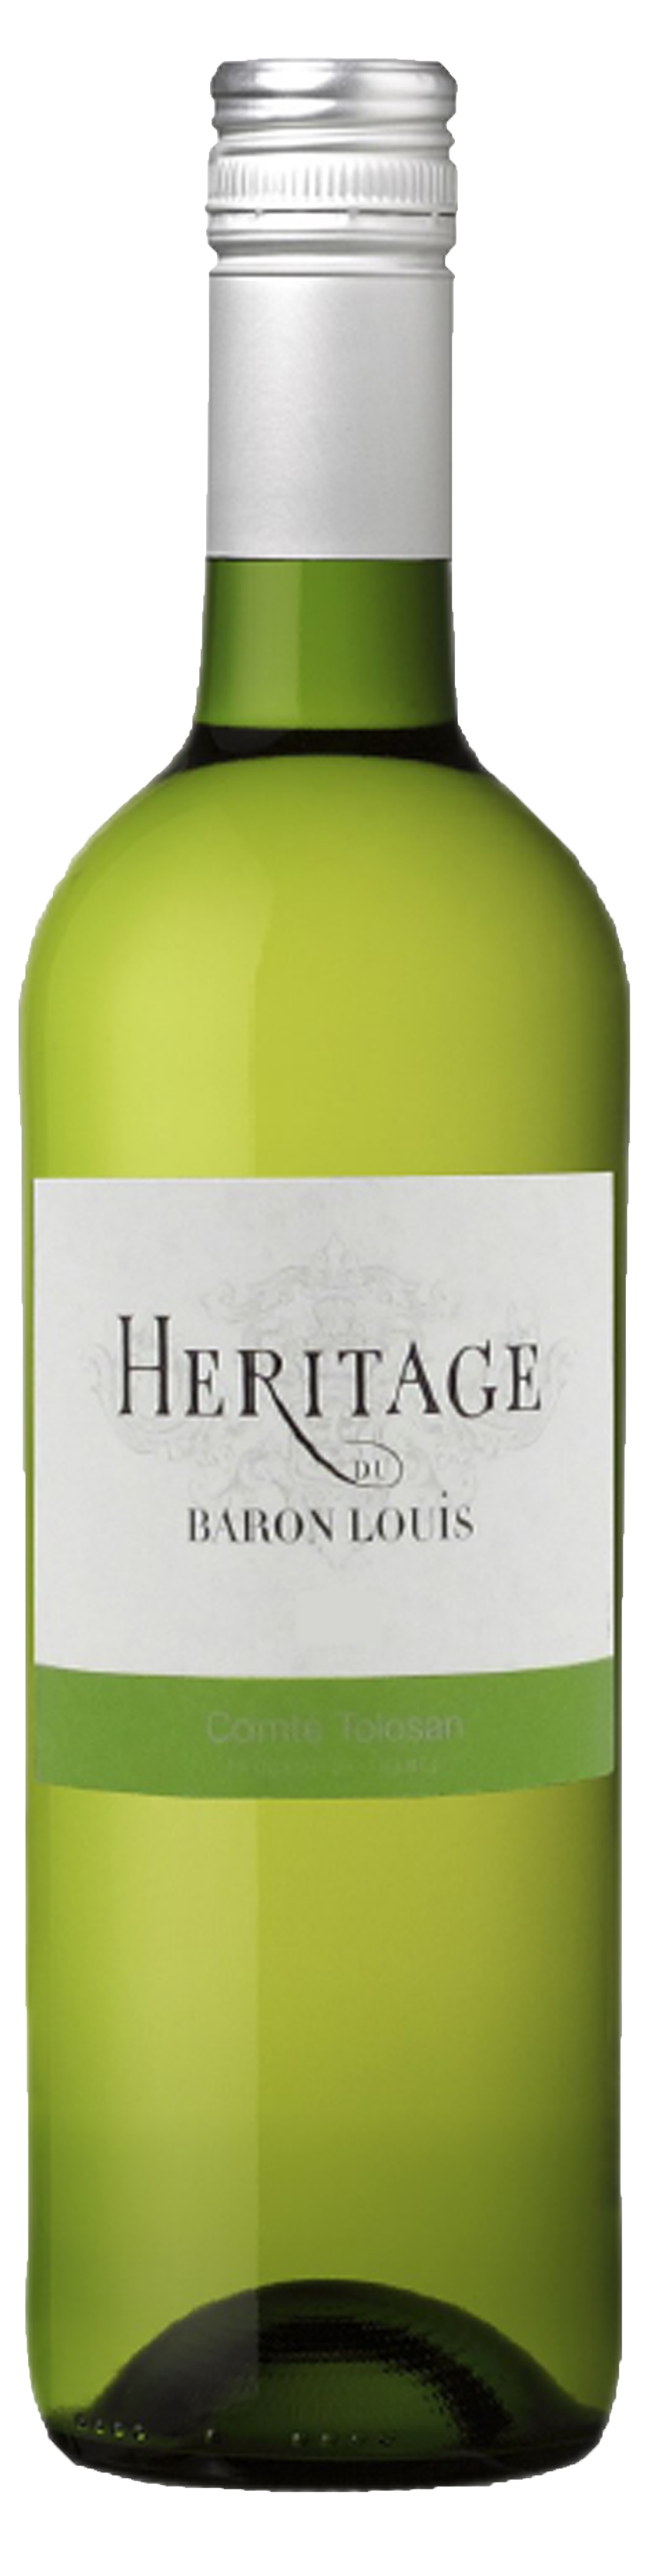 Bottle shot of 2018 Héritage de Baron Louis Blanc